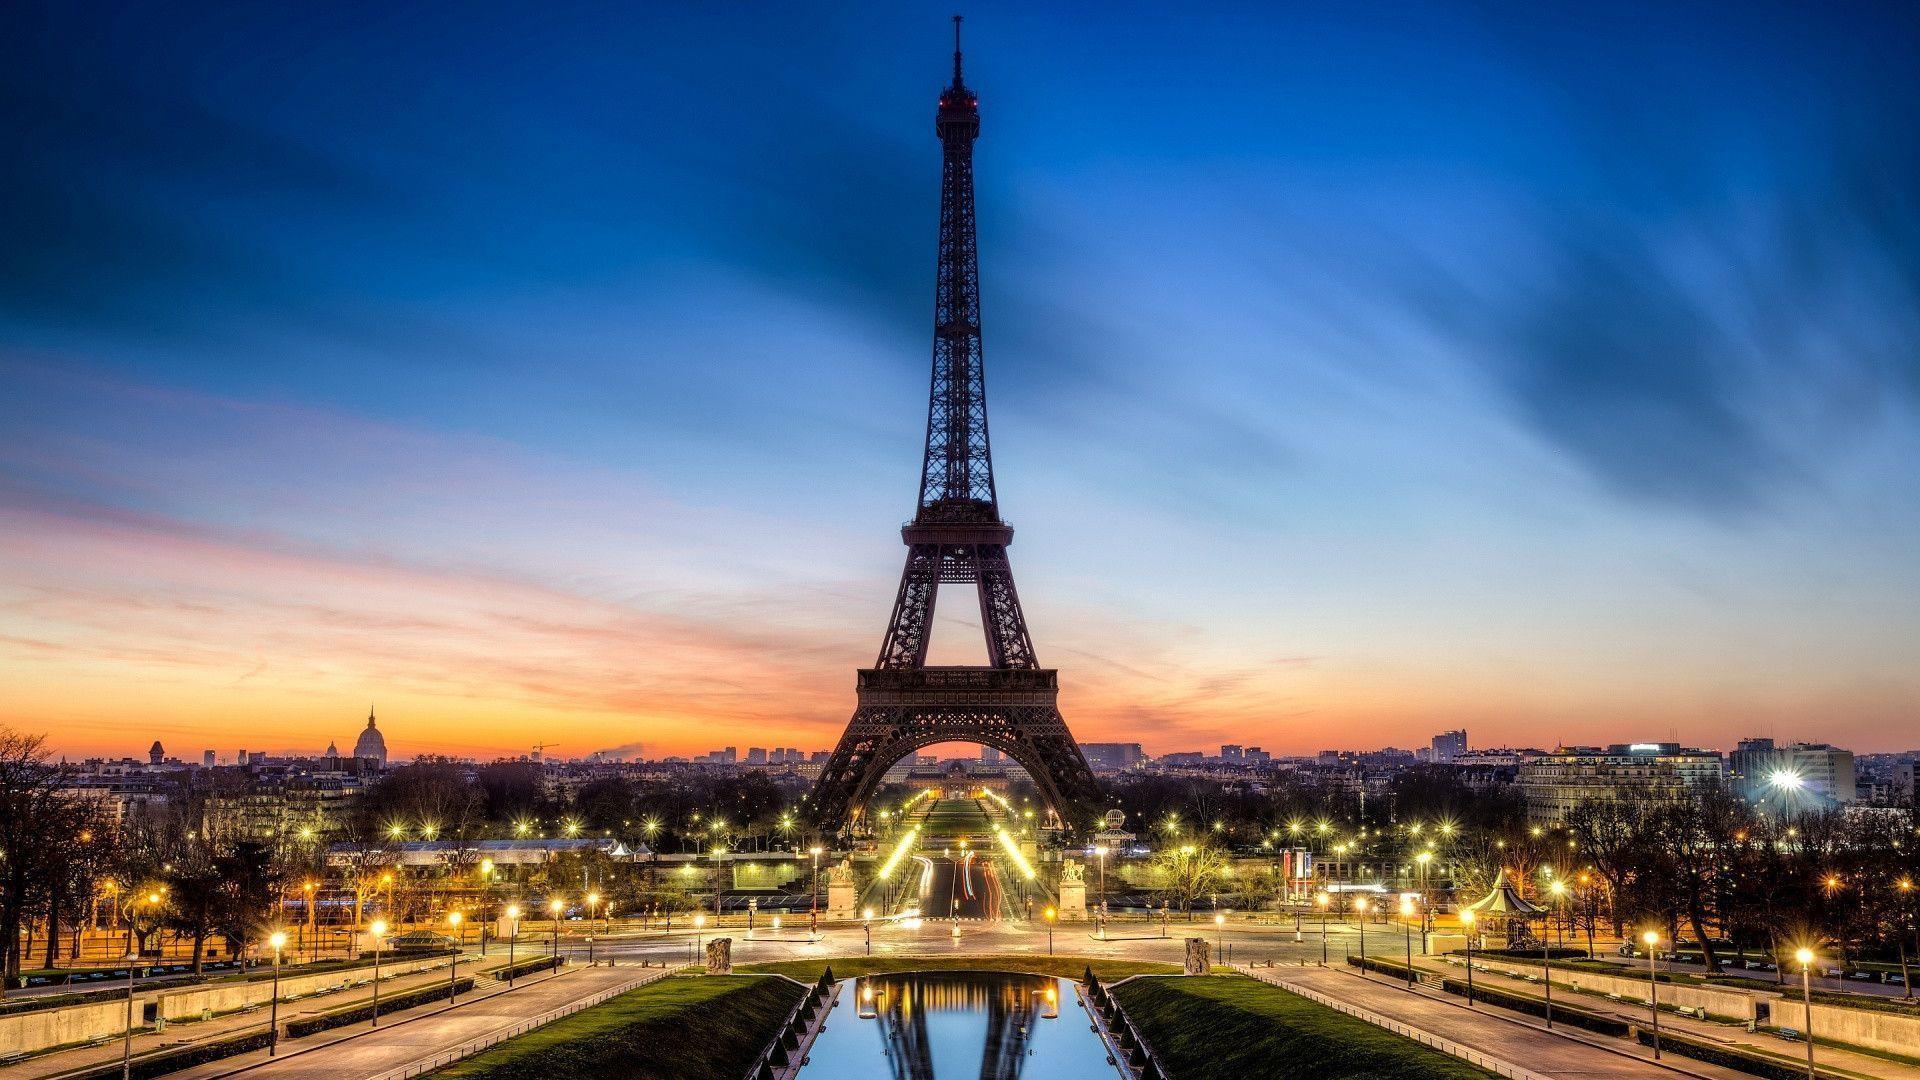 Eiffel Paris After Sunset Wallpaper High Resol Wallpaper